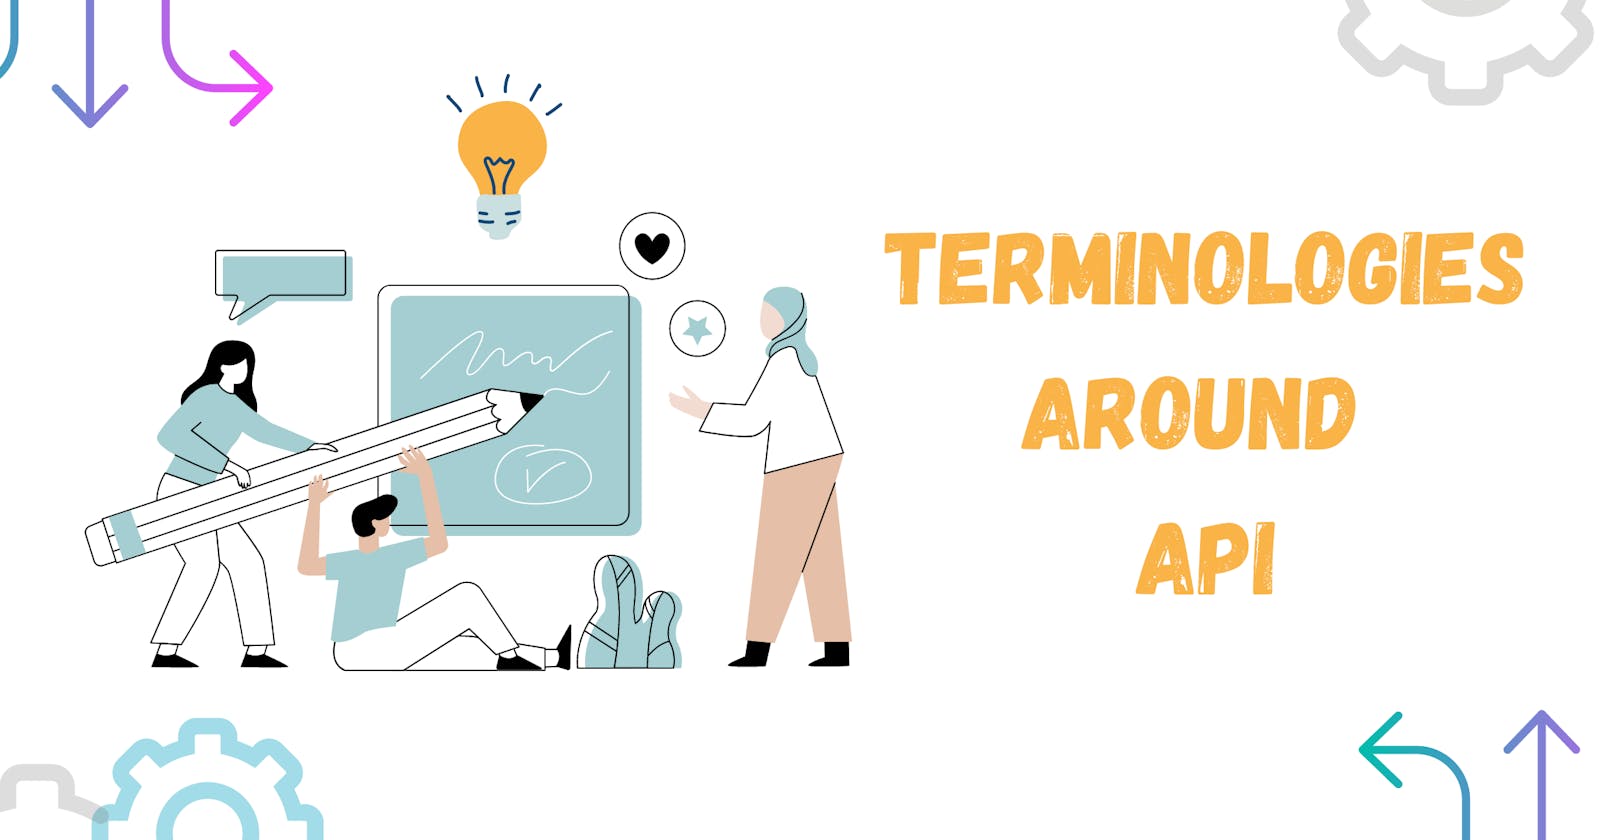 Terminologies Around API